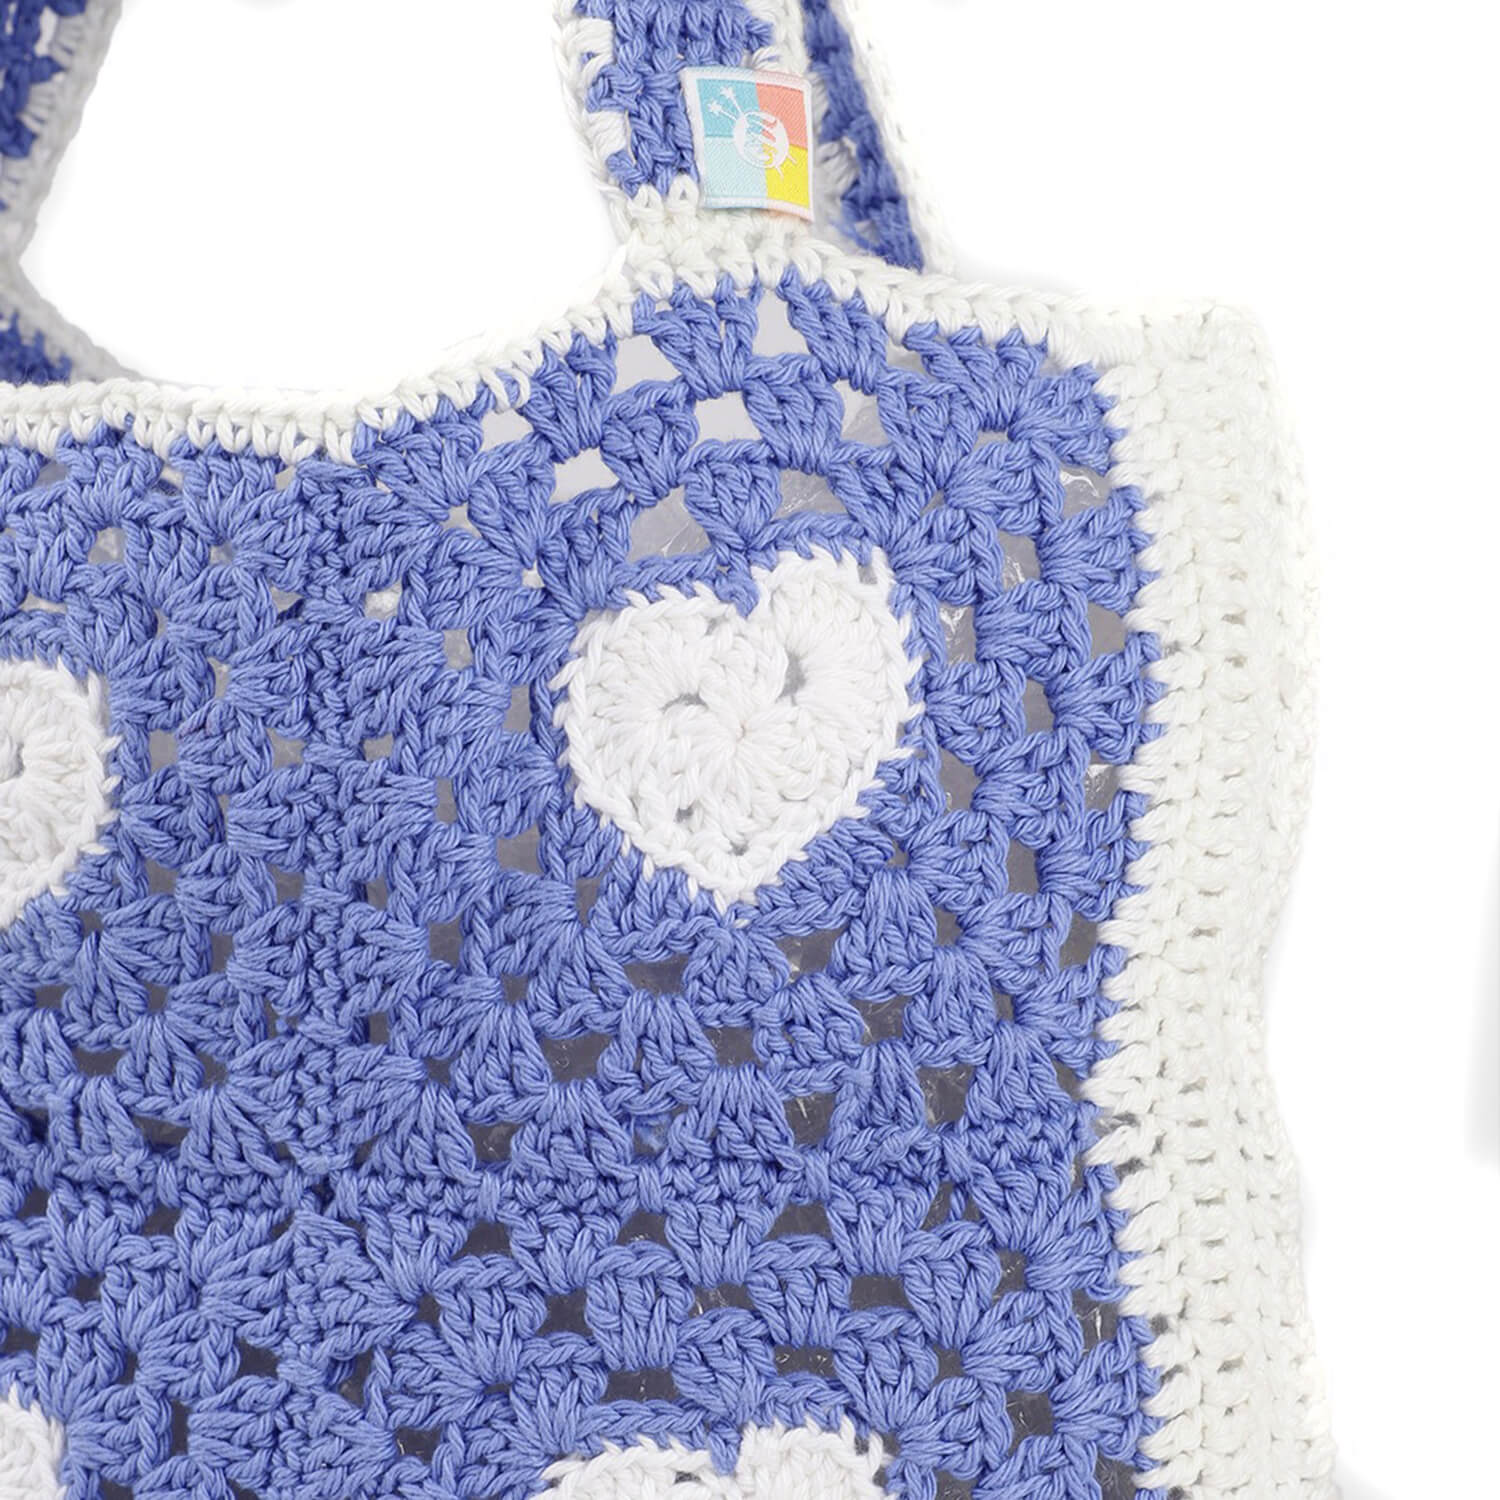 Handmade Crochet Market Bag - Blue, White 2812